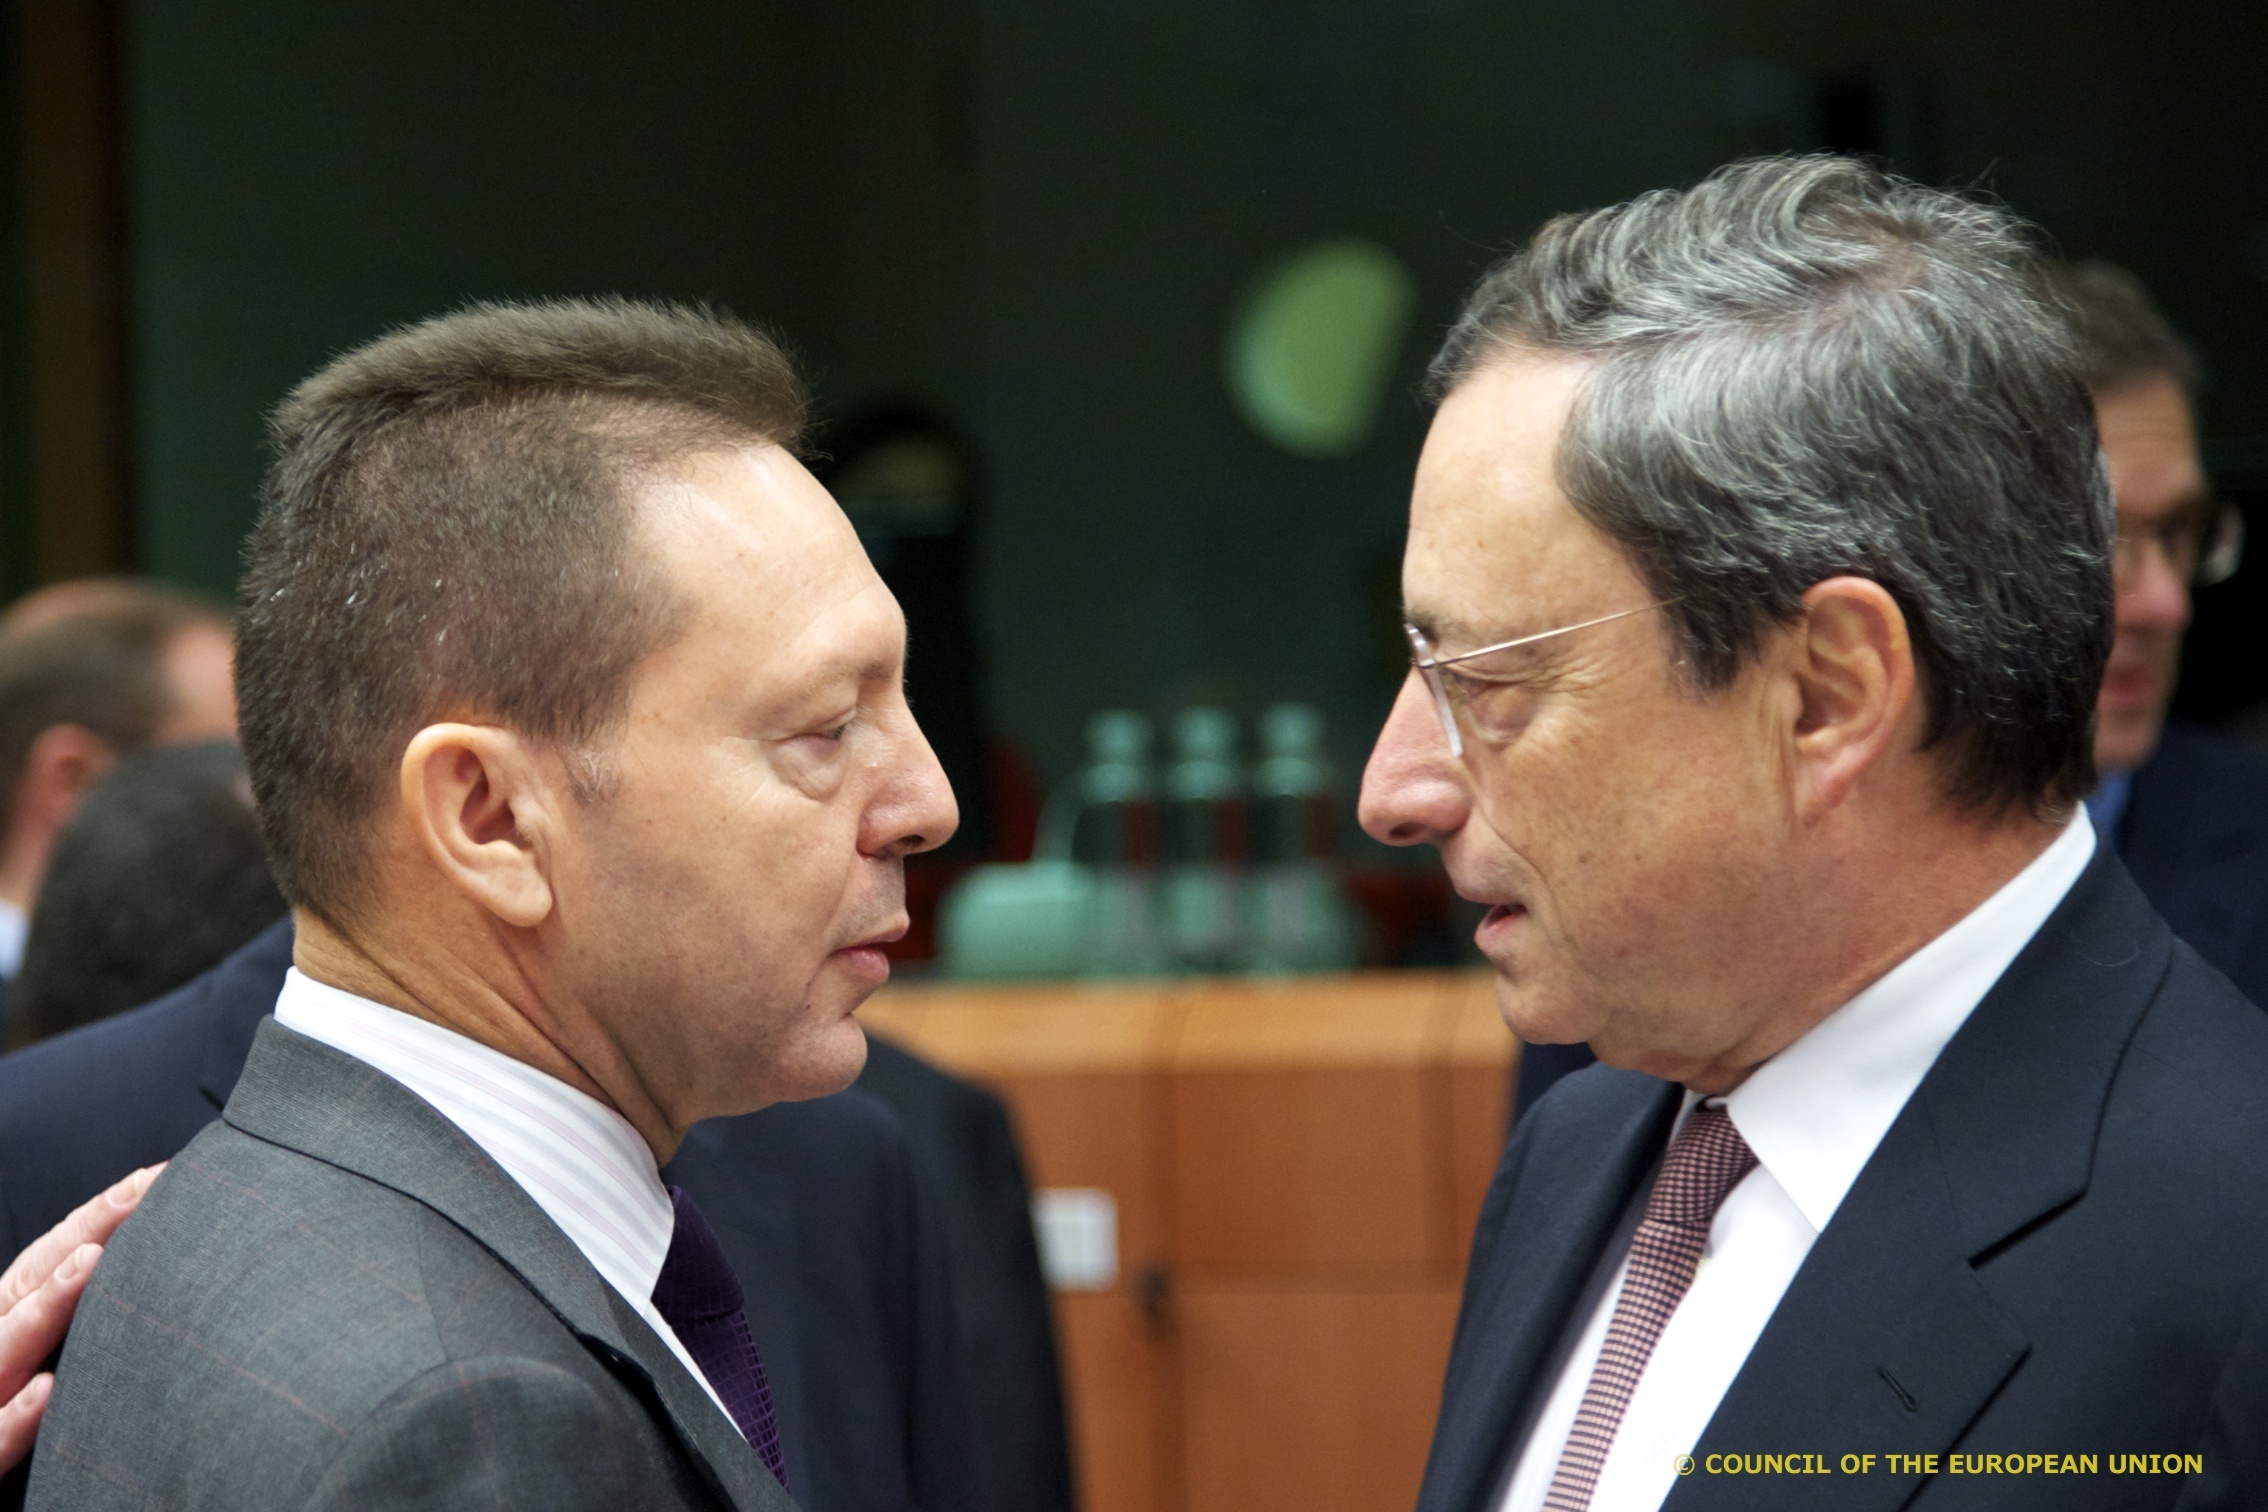 Στουρνάρας: “Στις 20 Νοεμβρίου η Ελλάδα περιμένει τελική απόφαση”